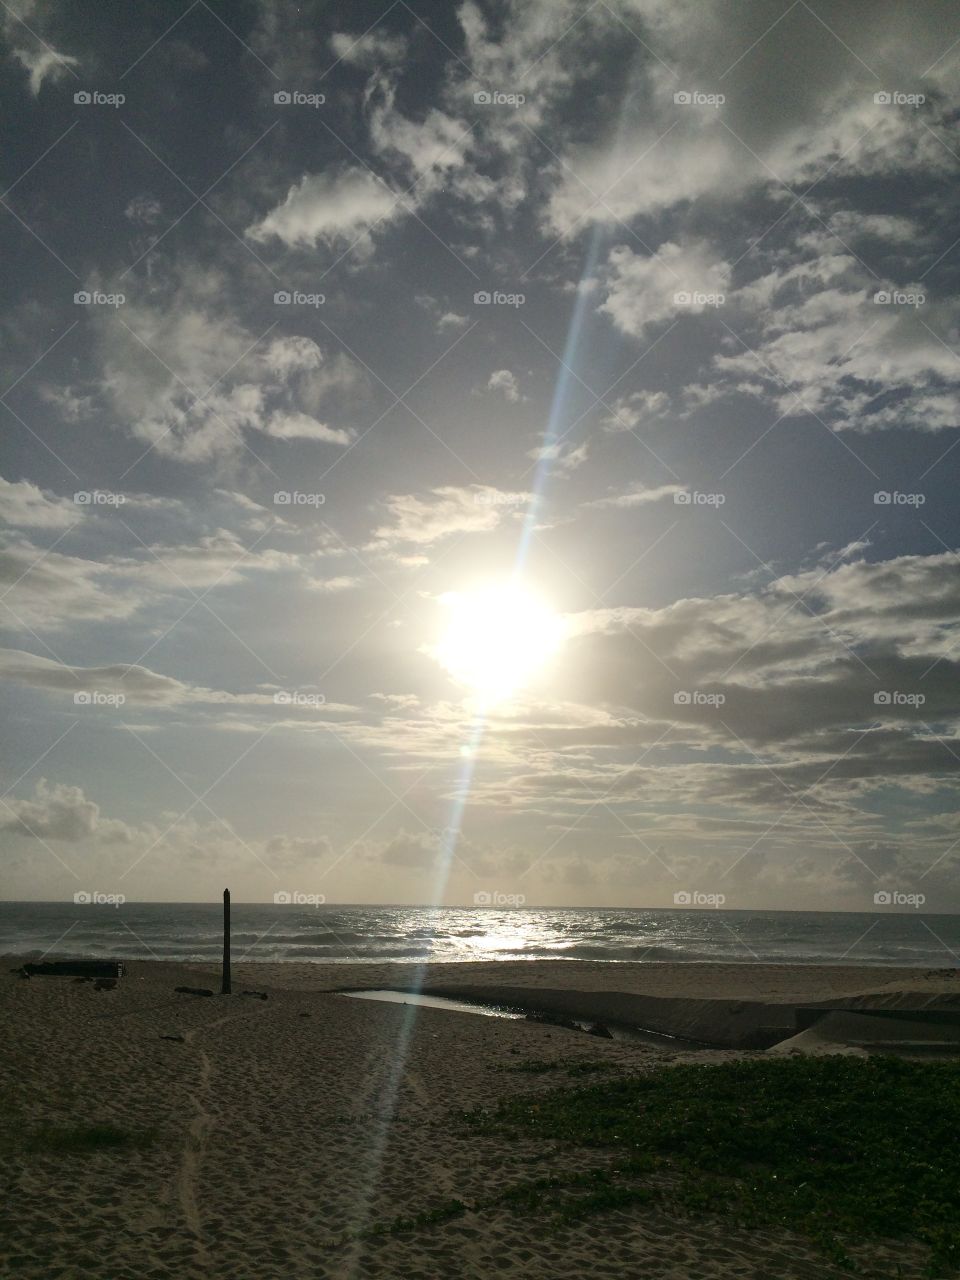 Praia do Futuro: summer on the Brazilian coast with an incredible sun! (praia do Futuro, no Ceará). 